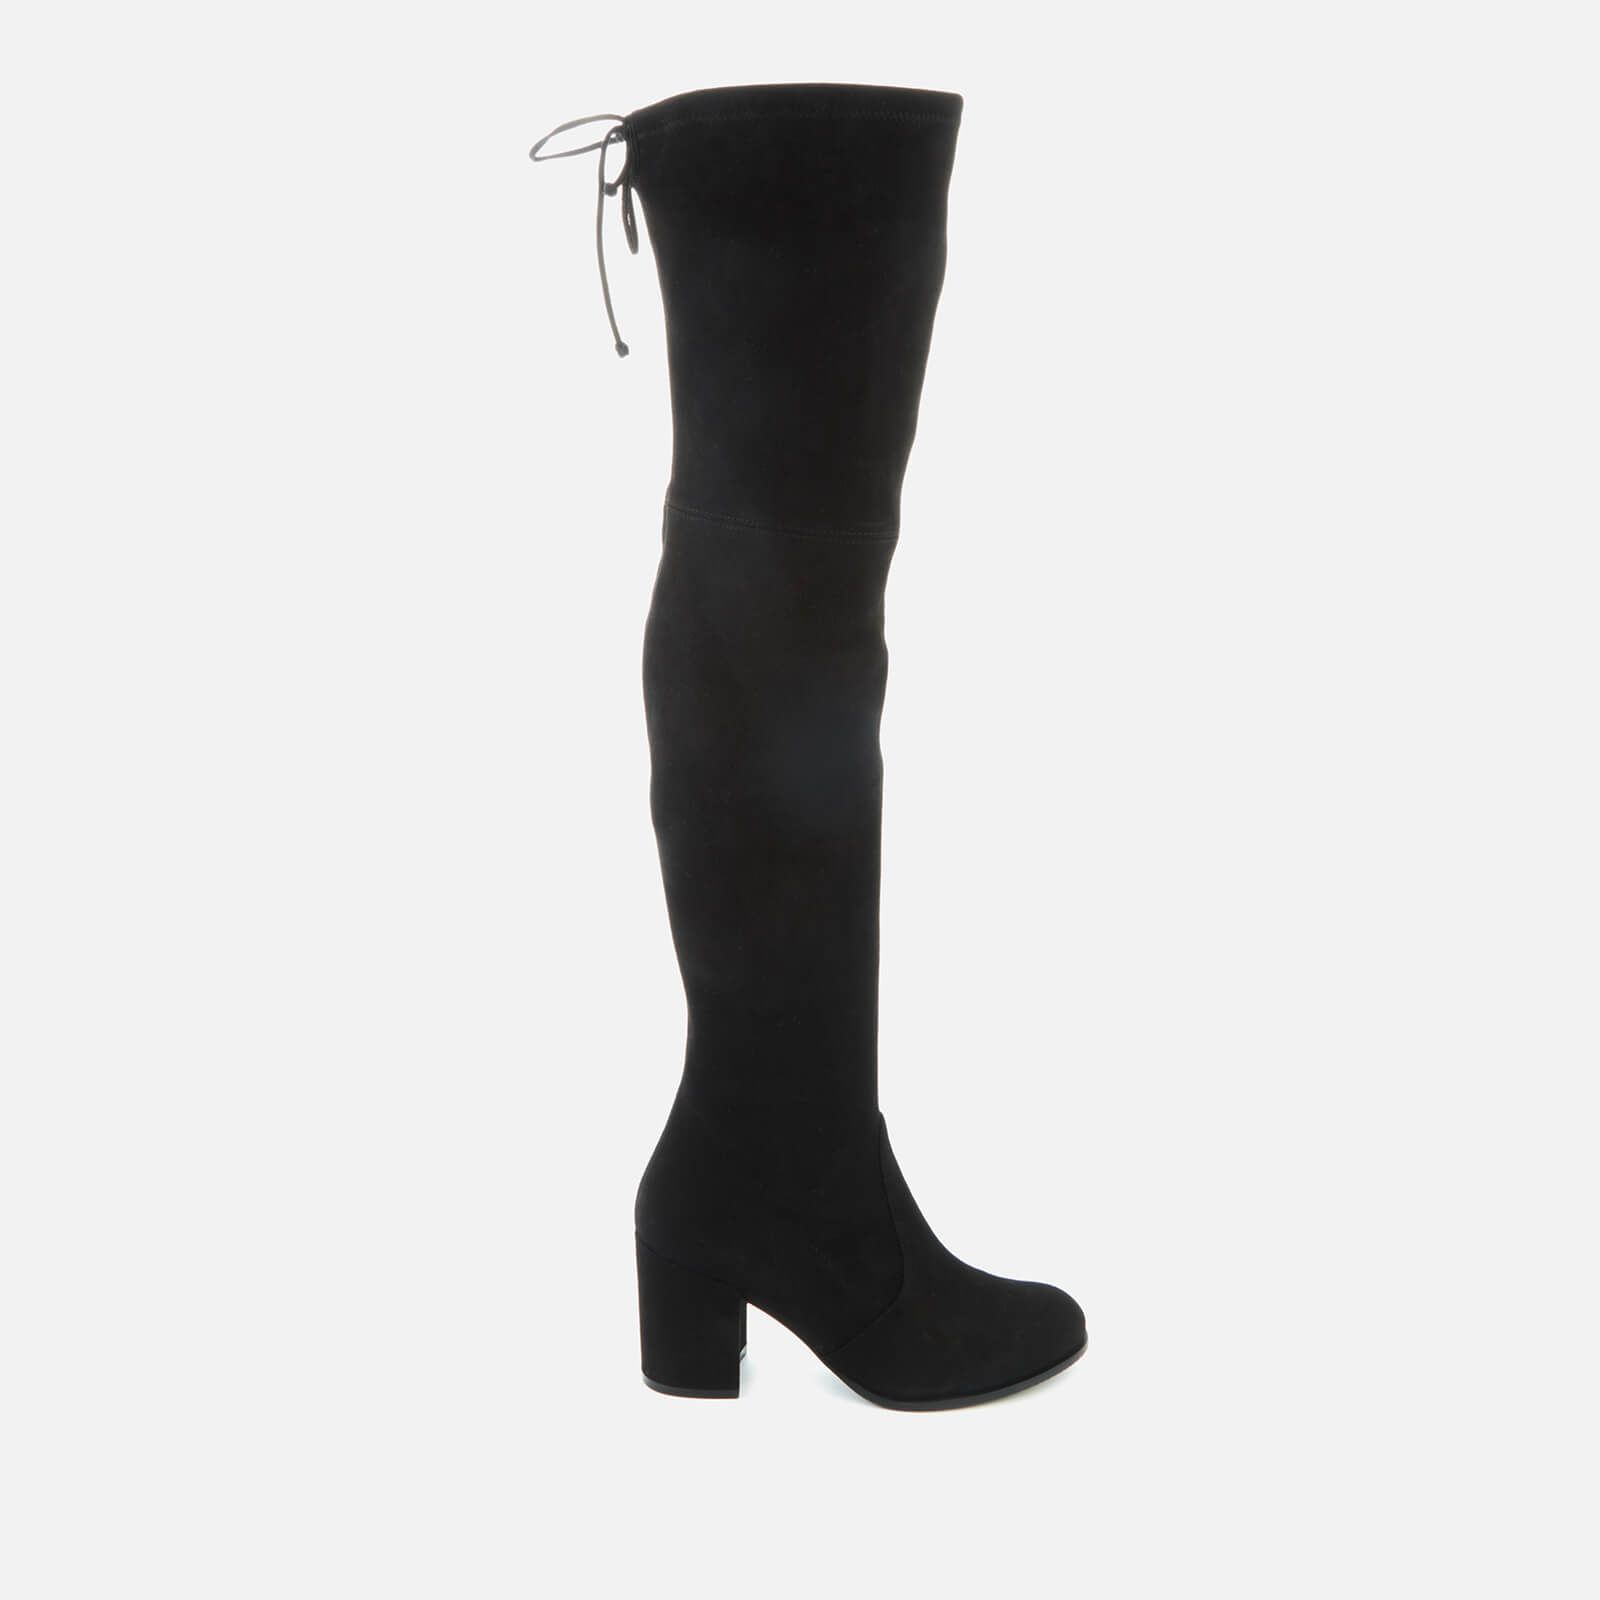 Stuart Weitzman Women's Tieland Suede Over The Knee Heeled Boots - Black - UK 8